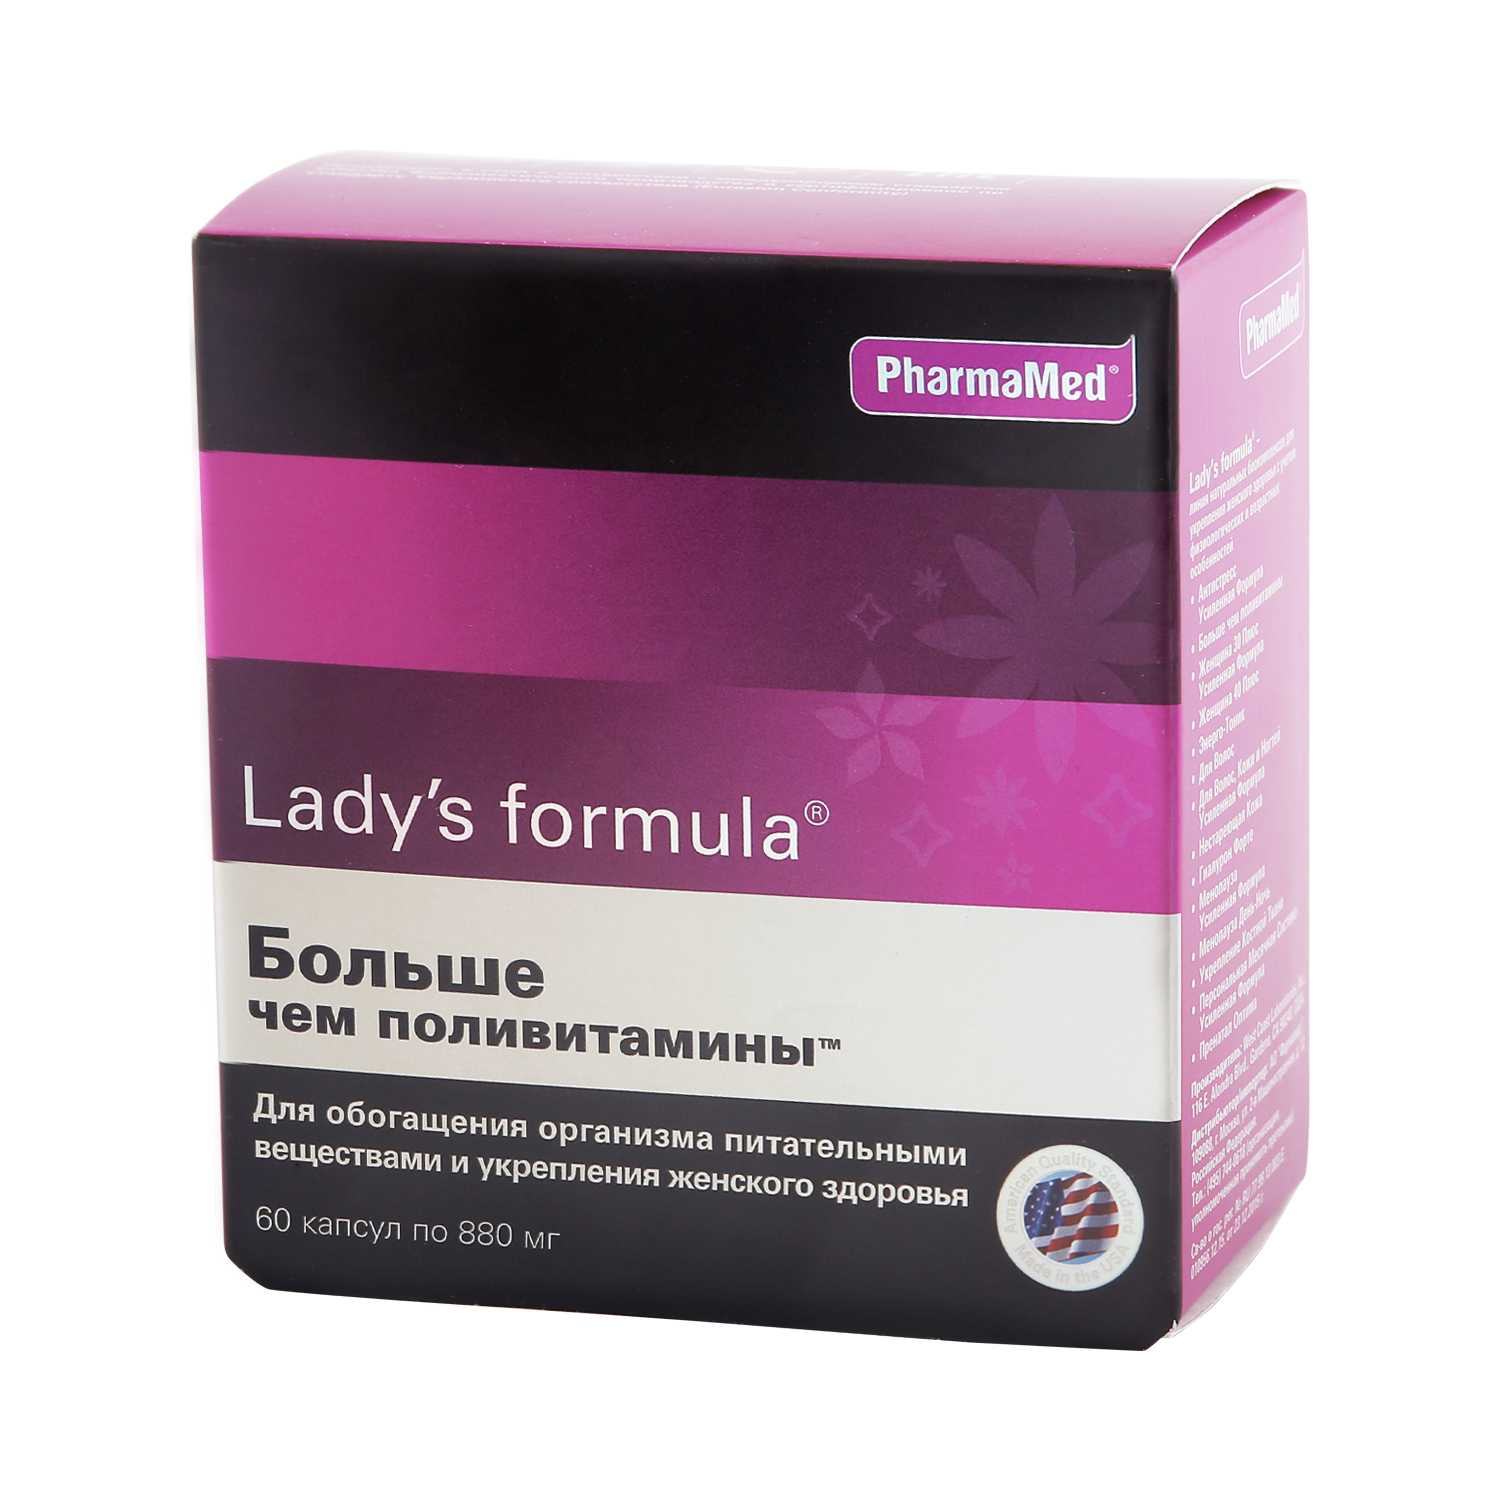 Ледис формула менопауза купить в аптеке. PHARMAMED Lady's Formula. Витамины для женщин ледис формула. Lady's Formula больше чем поливитамины состав. Американские витамины для женщин ледис формула.